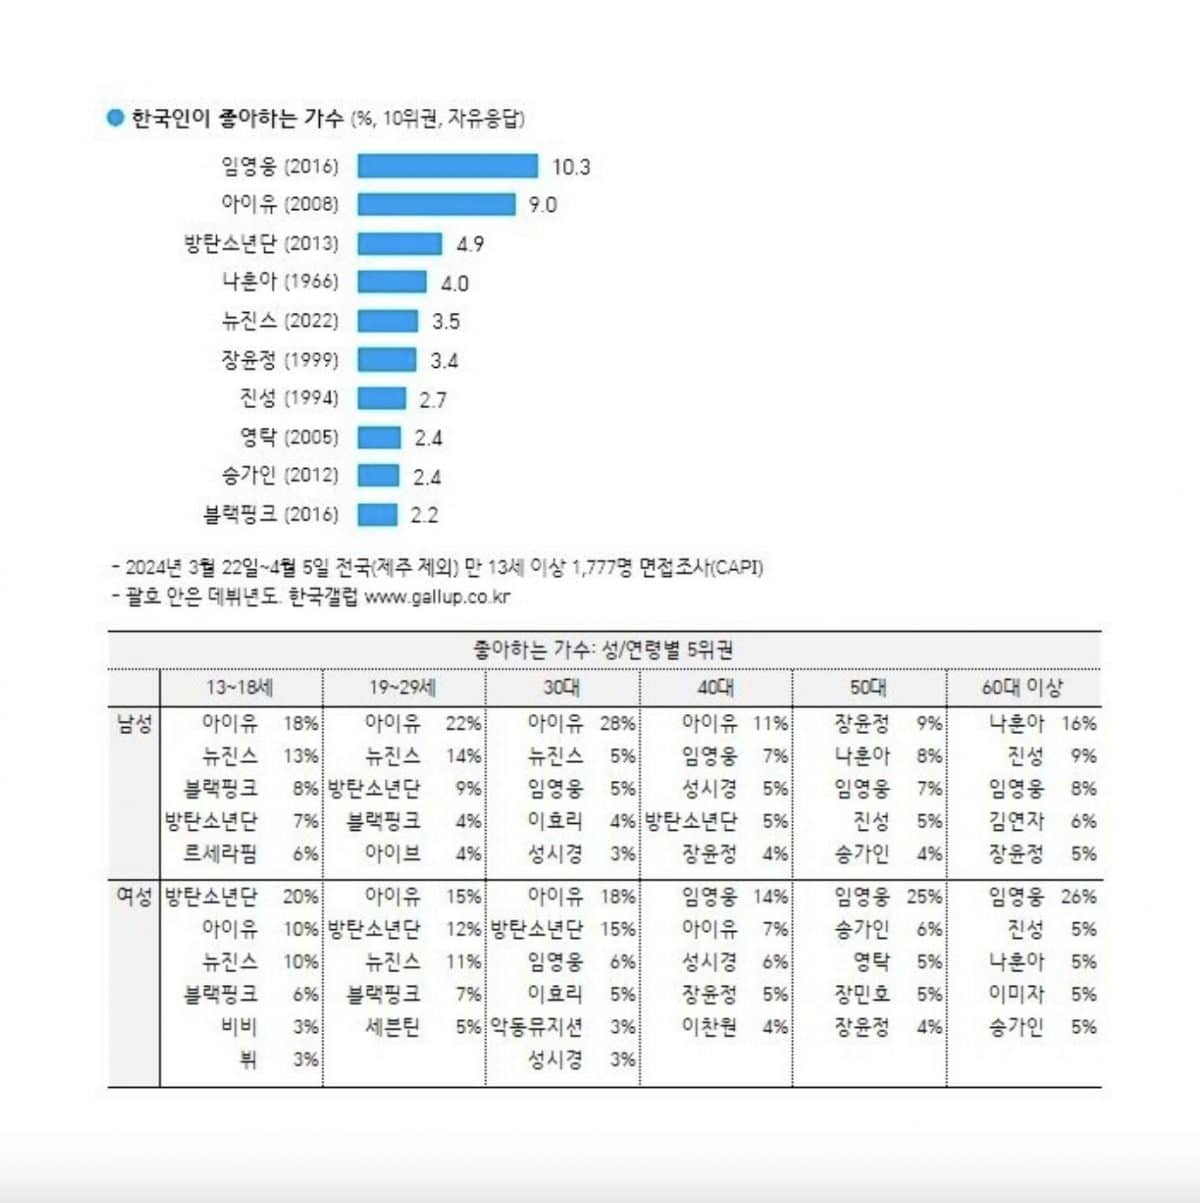 Тэхён единственный из BTS в списке Gallup Korea, составленном на основе опроса общественного мнения